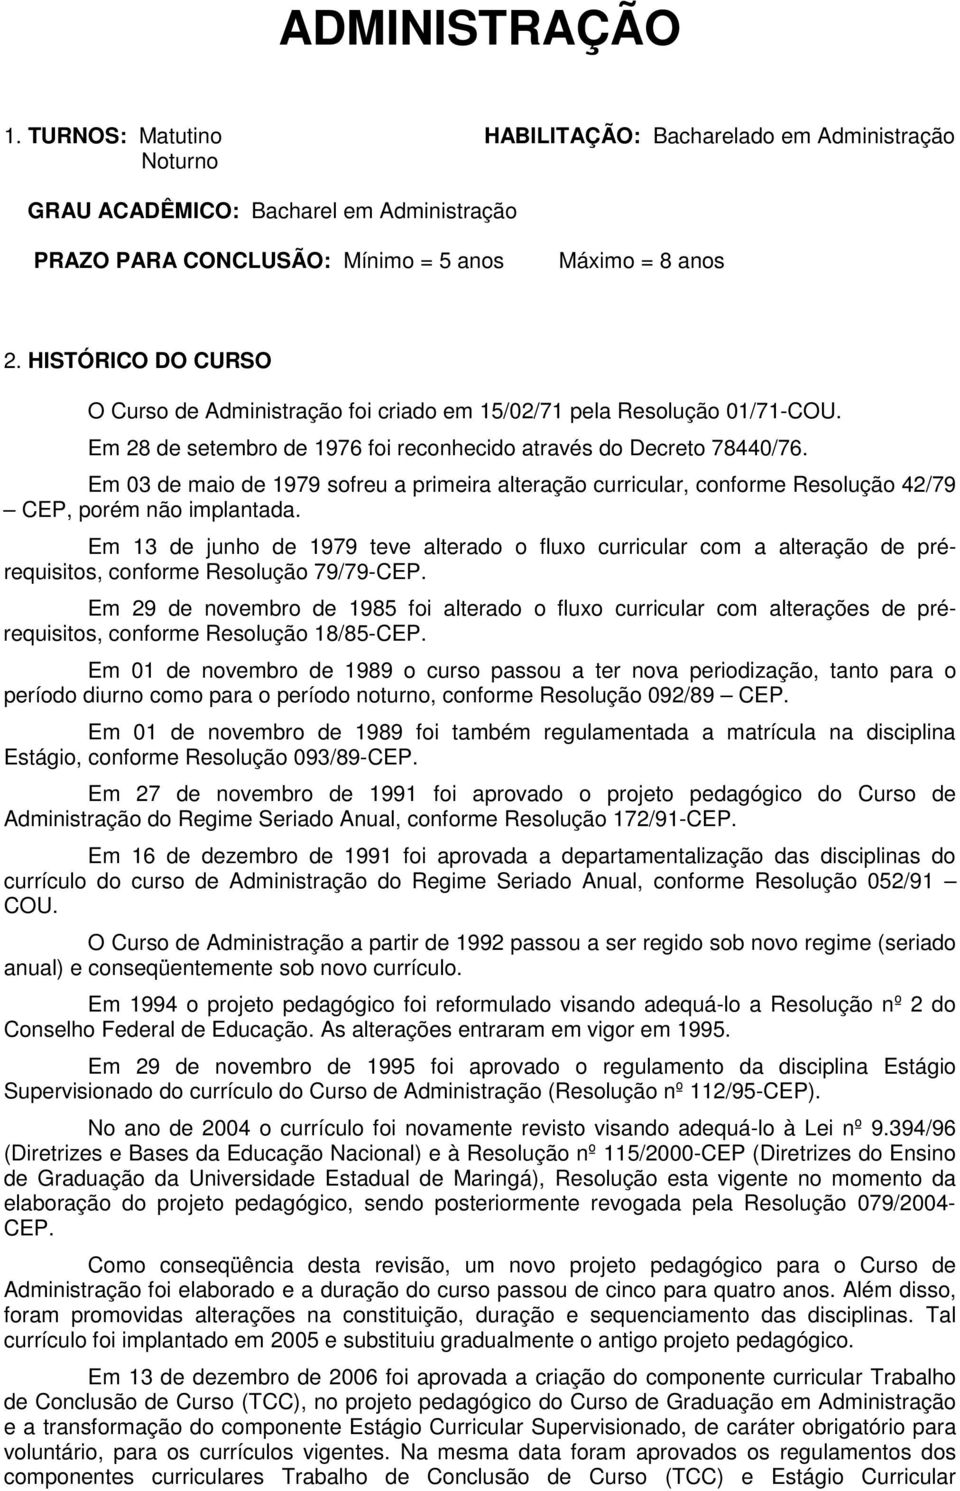 Em 03 de maio de 1979 sofreu a primeira alteração curricular, conforme Resolução 42/79 CEP, porém não implantada.